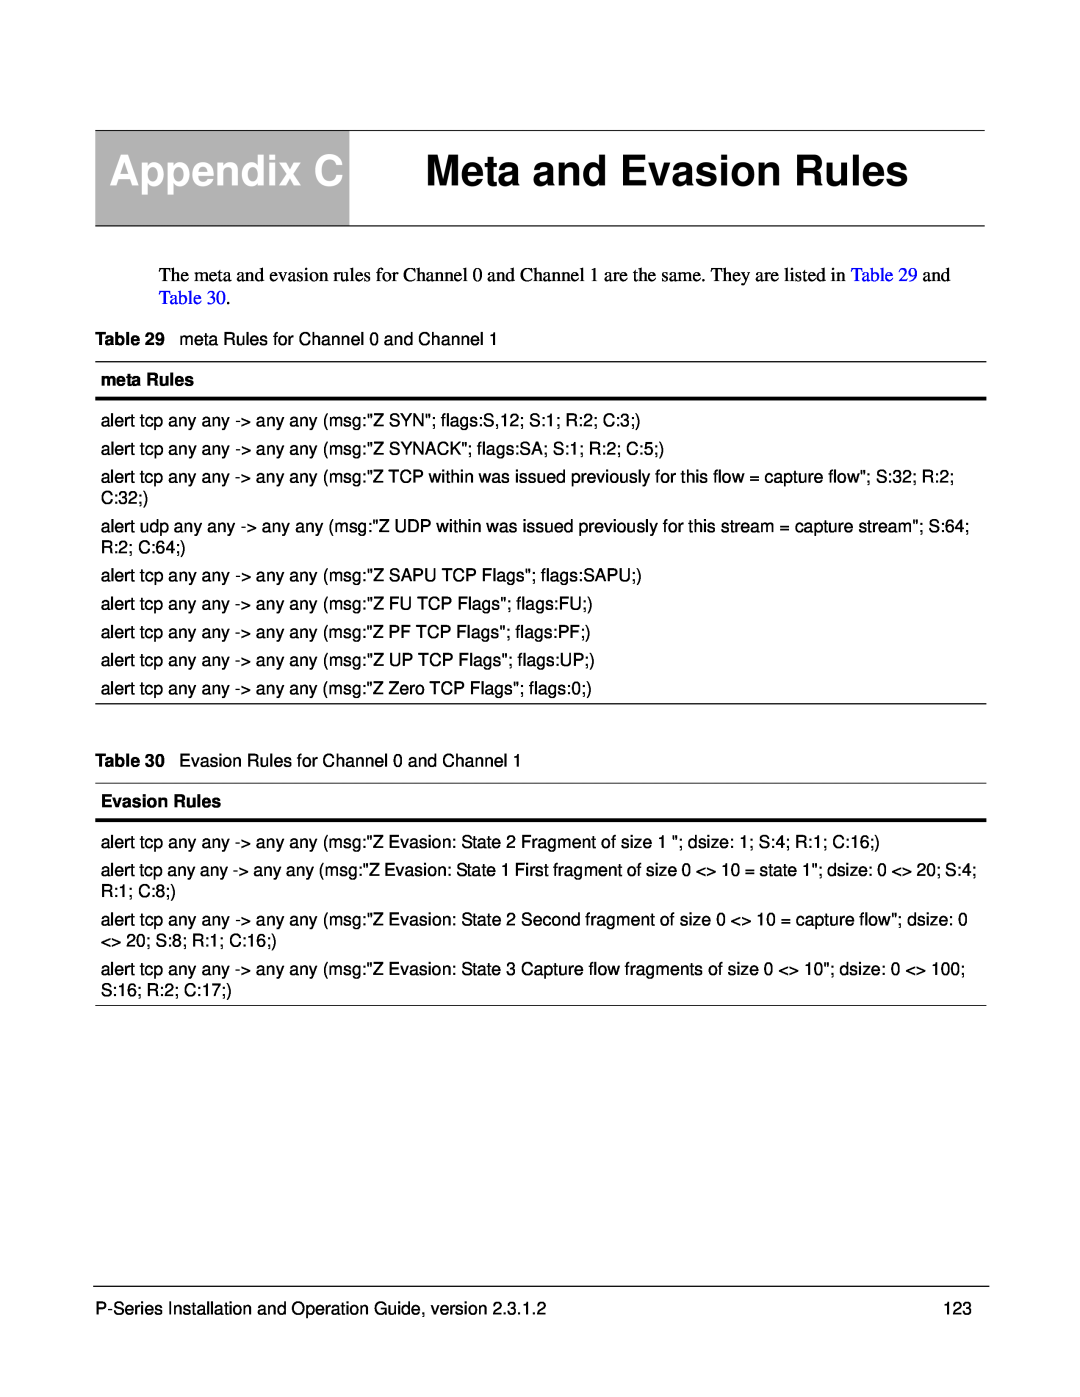 Force10 Networks 100-00055-01 manual Appendix C Meta and Evasion Rules, meta Rules 